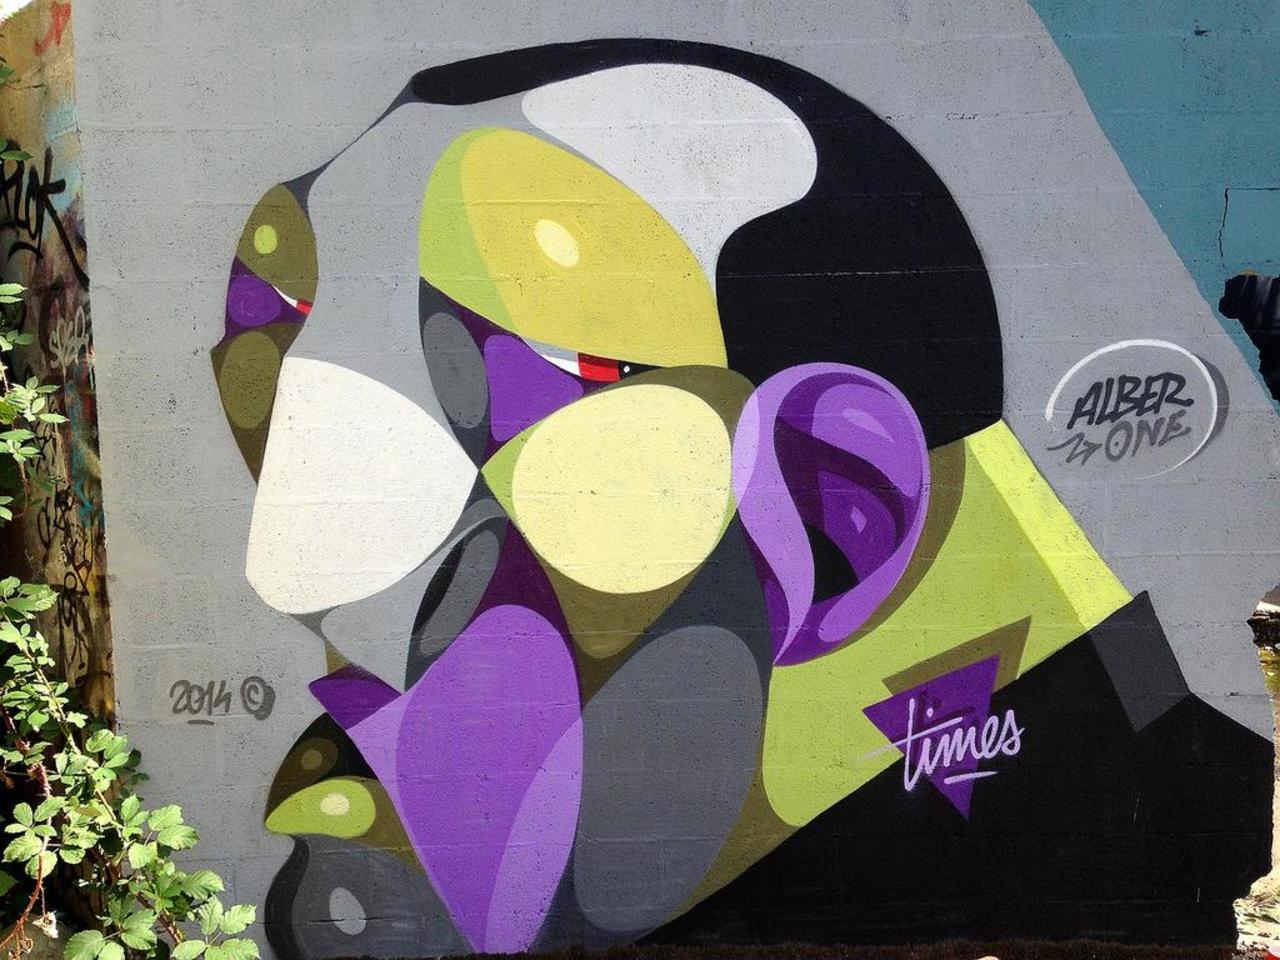 Street Art by Alber in #Bordeaux http://www.urbacolors.com #art #mural #graffiti #streetart https://t.co/vG5y5Zc7Bs